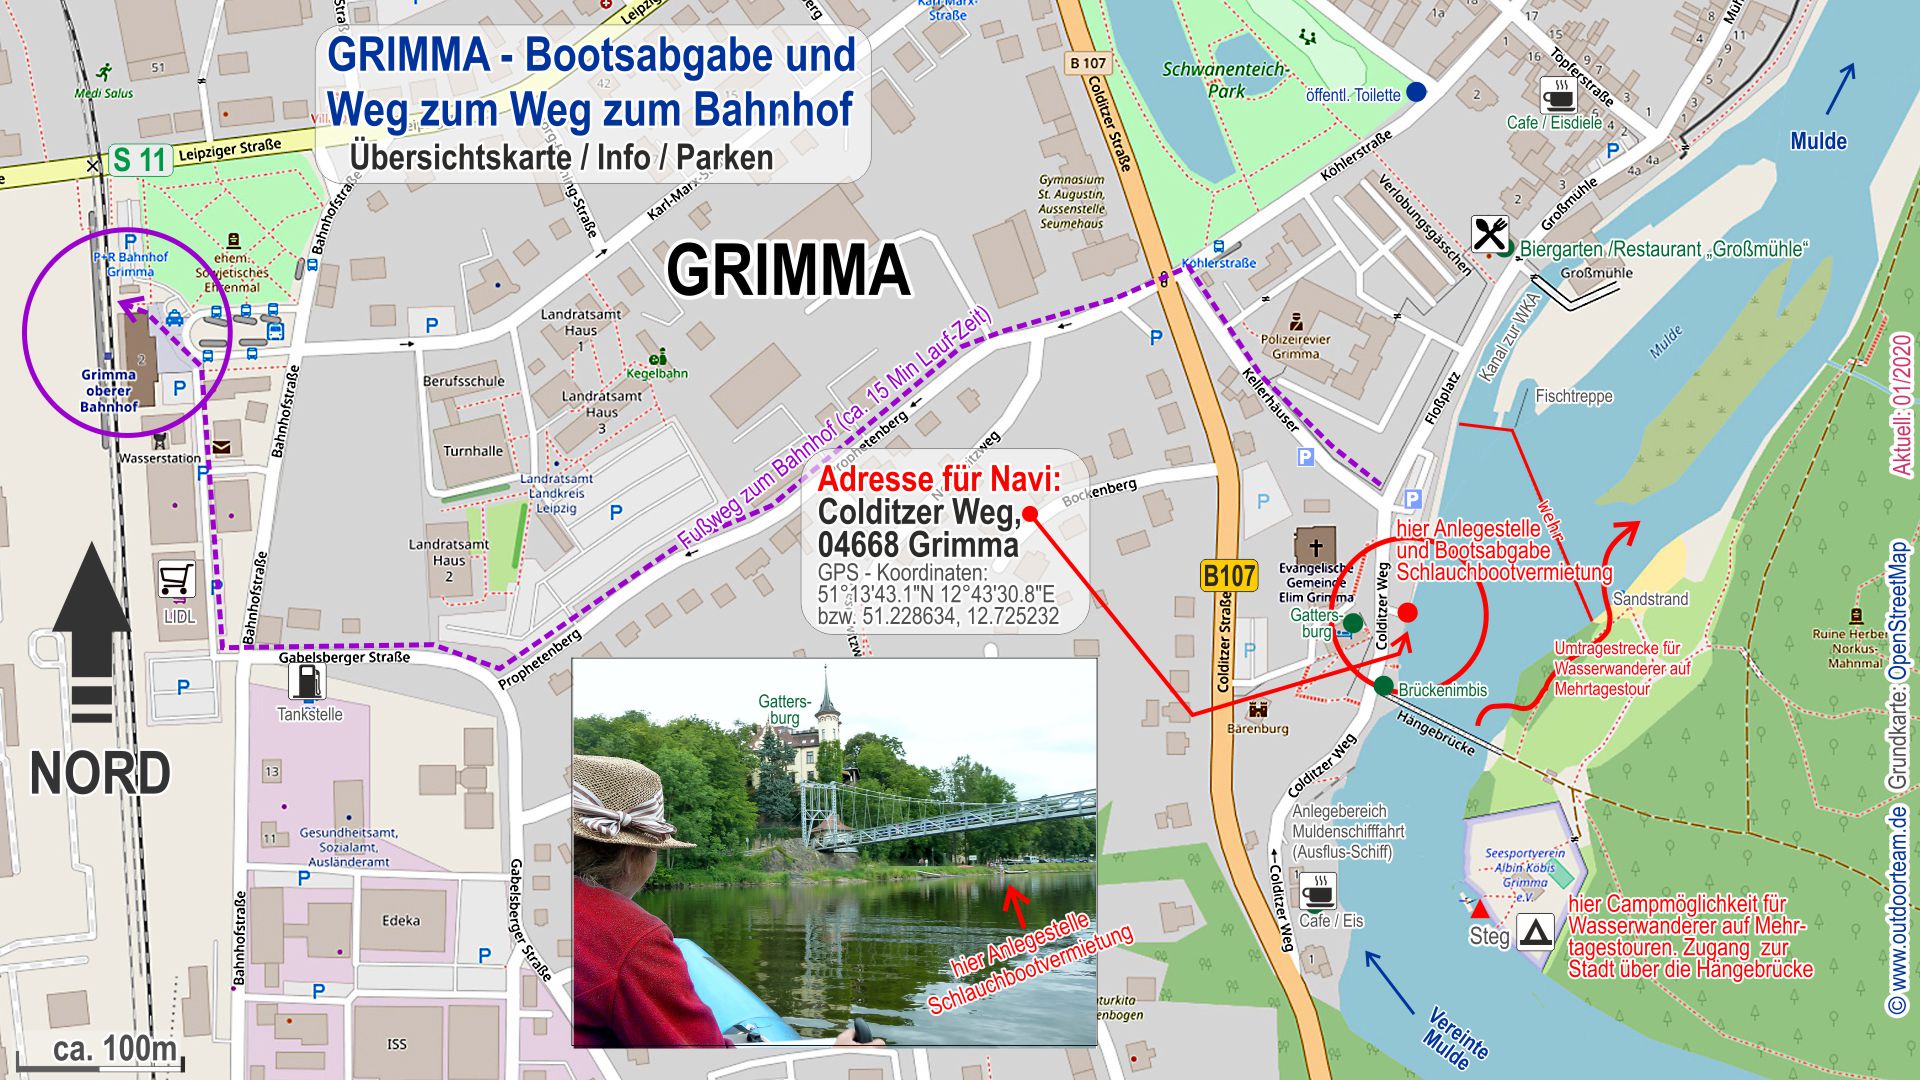 Detailkarte Stadt Grimma - alle Infos zur Übernachtung, Parkplätze, Gastronomie und Umtragehinweise am Stadtwehr.